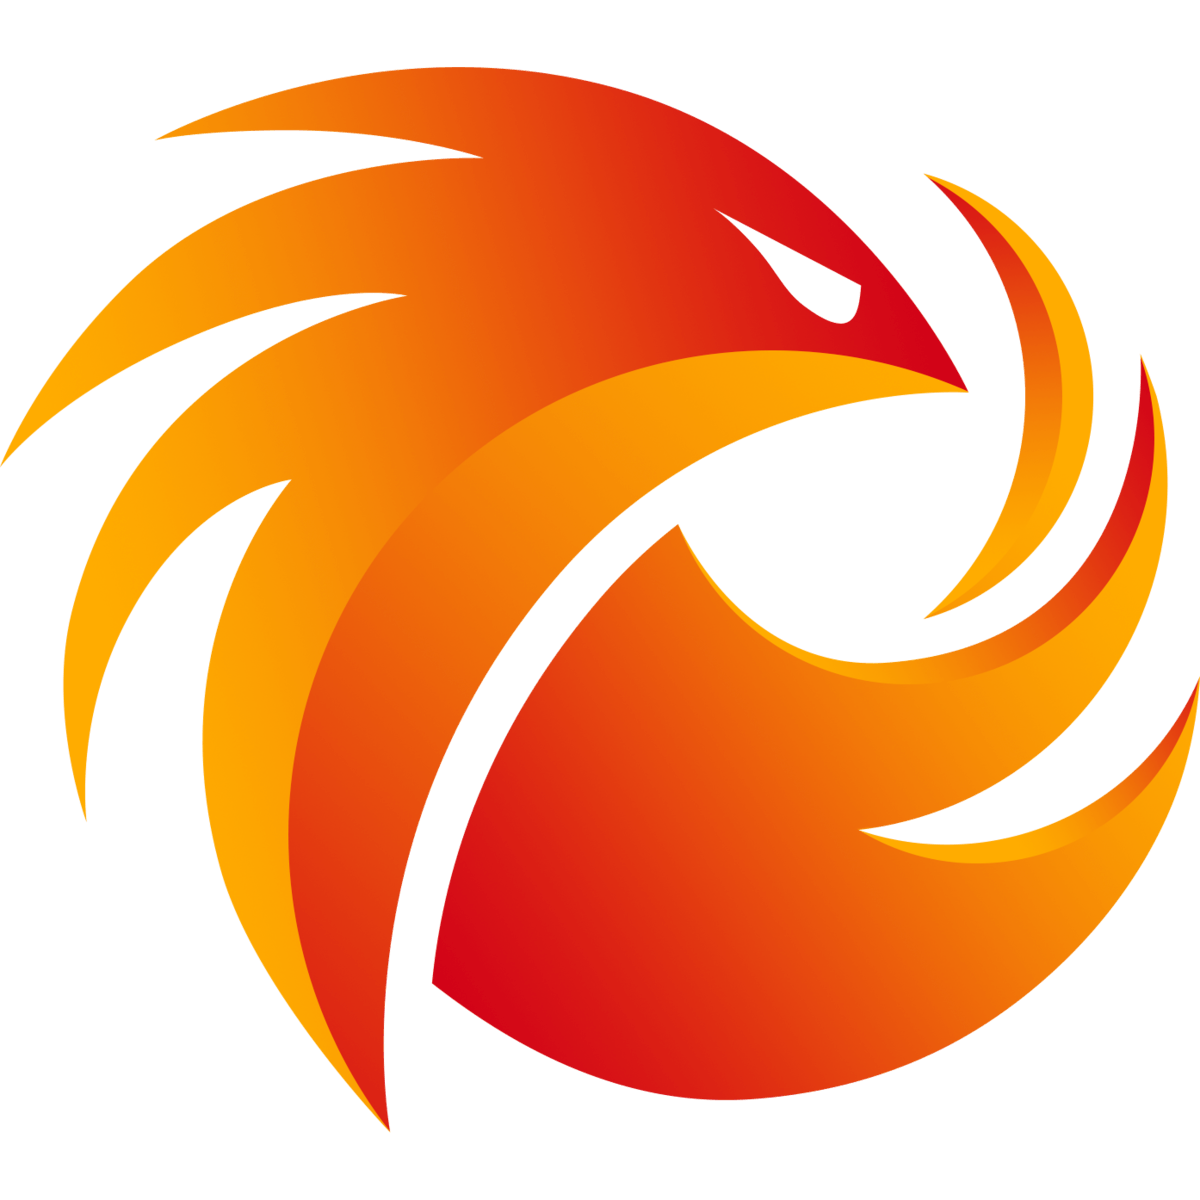 PHOENIX1 Logo - Phoenix1. League of Legends Esports